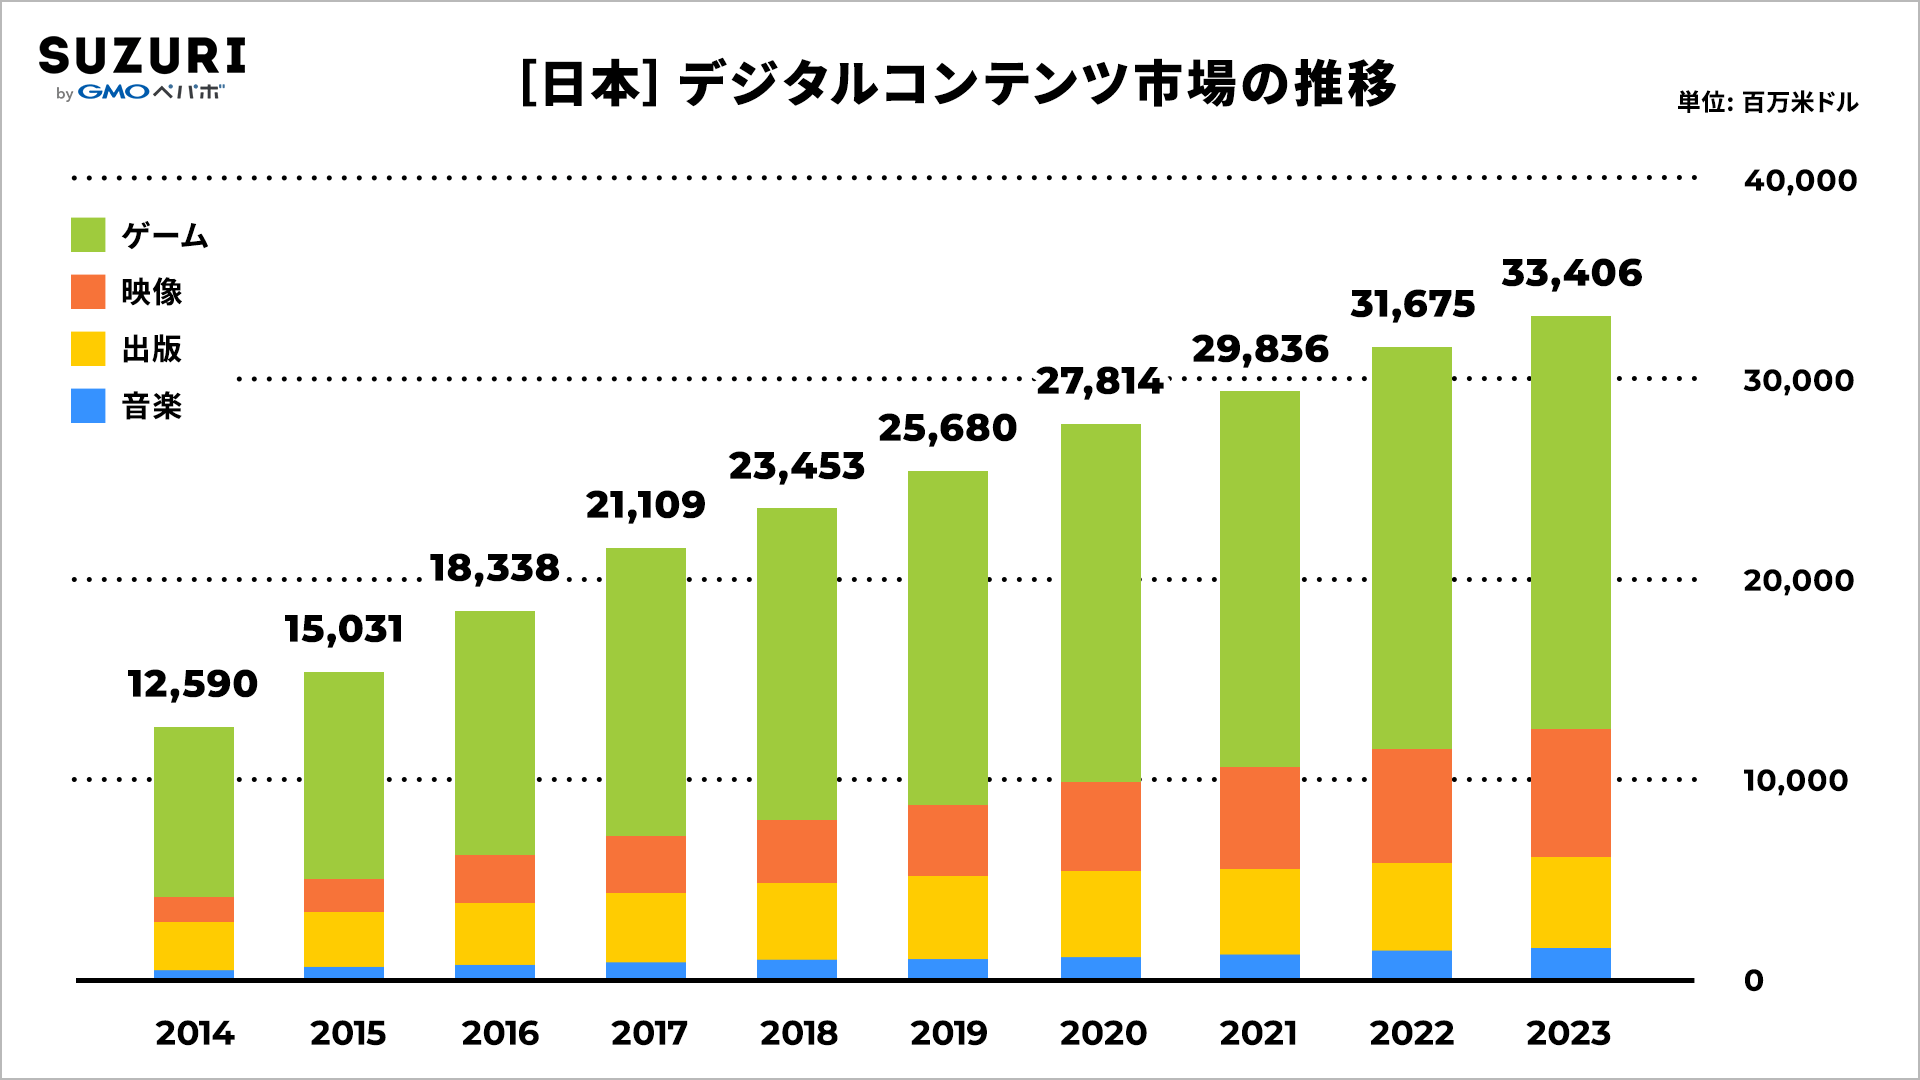 日本のデジタルコンテンツ市場の推移を表したグラフ。デジタルコンテンツの内訳はゲーム、映像、出版、音楽の4つに分類されている。2014年では日本におけるデジタルコンテンツ市場規模は12,950百万米ドル百万米ドルであったが、毎年右肩上がりに規模が拡大し、今年2022年では31,675百万米ドル、来年2023年には33,406百万米ドルの市場規模になるとされている。